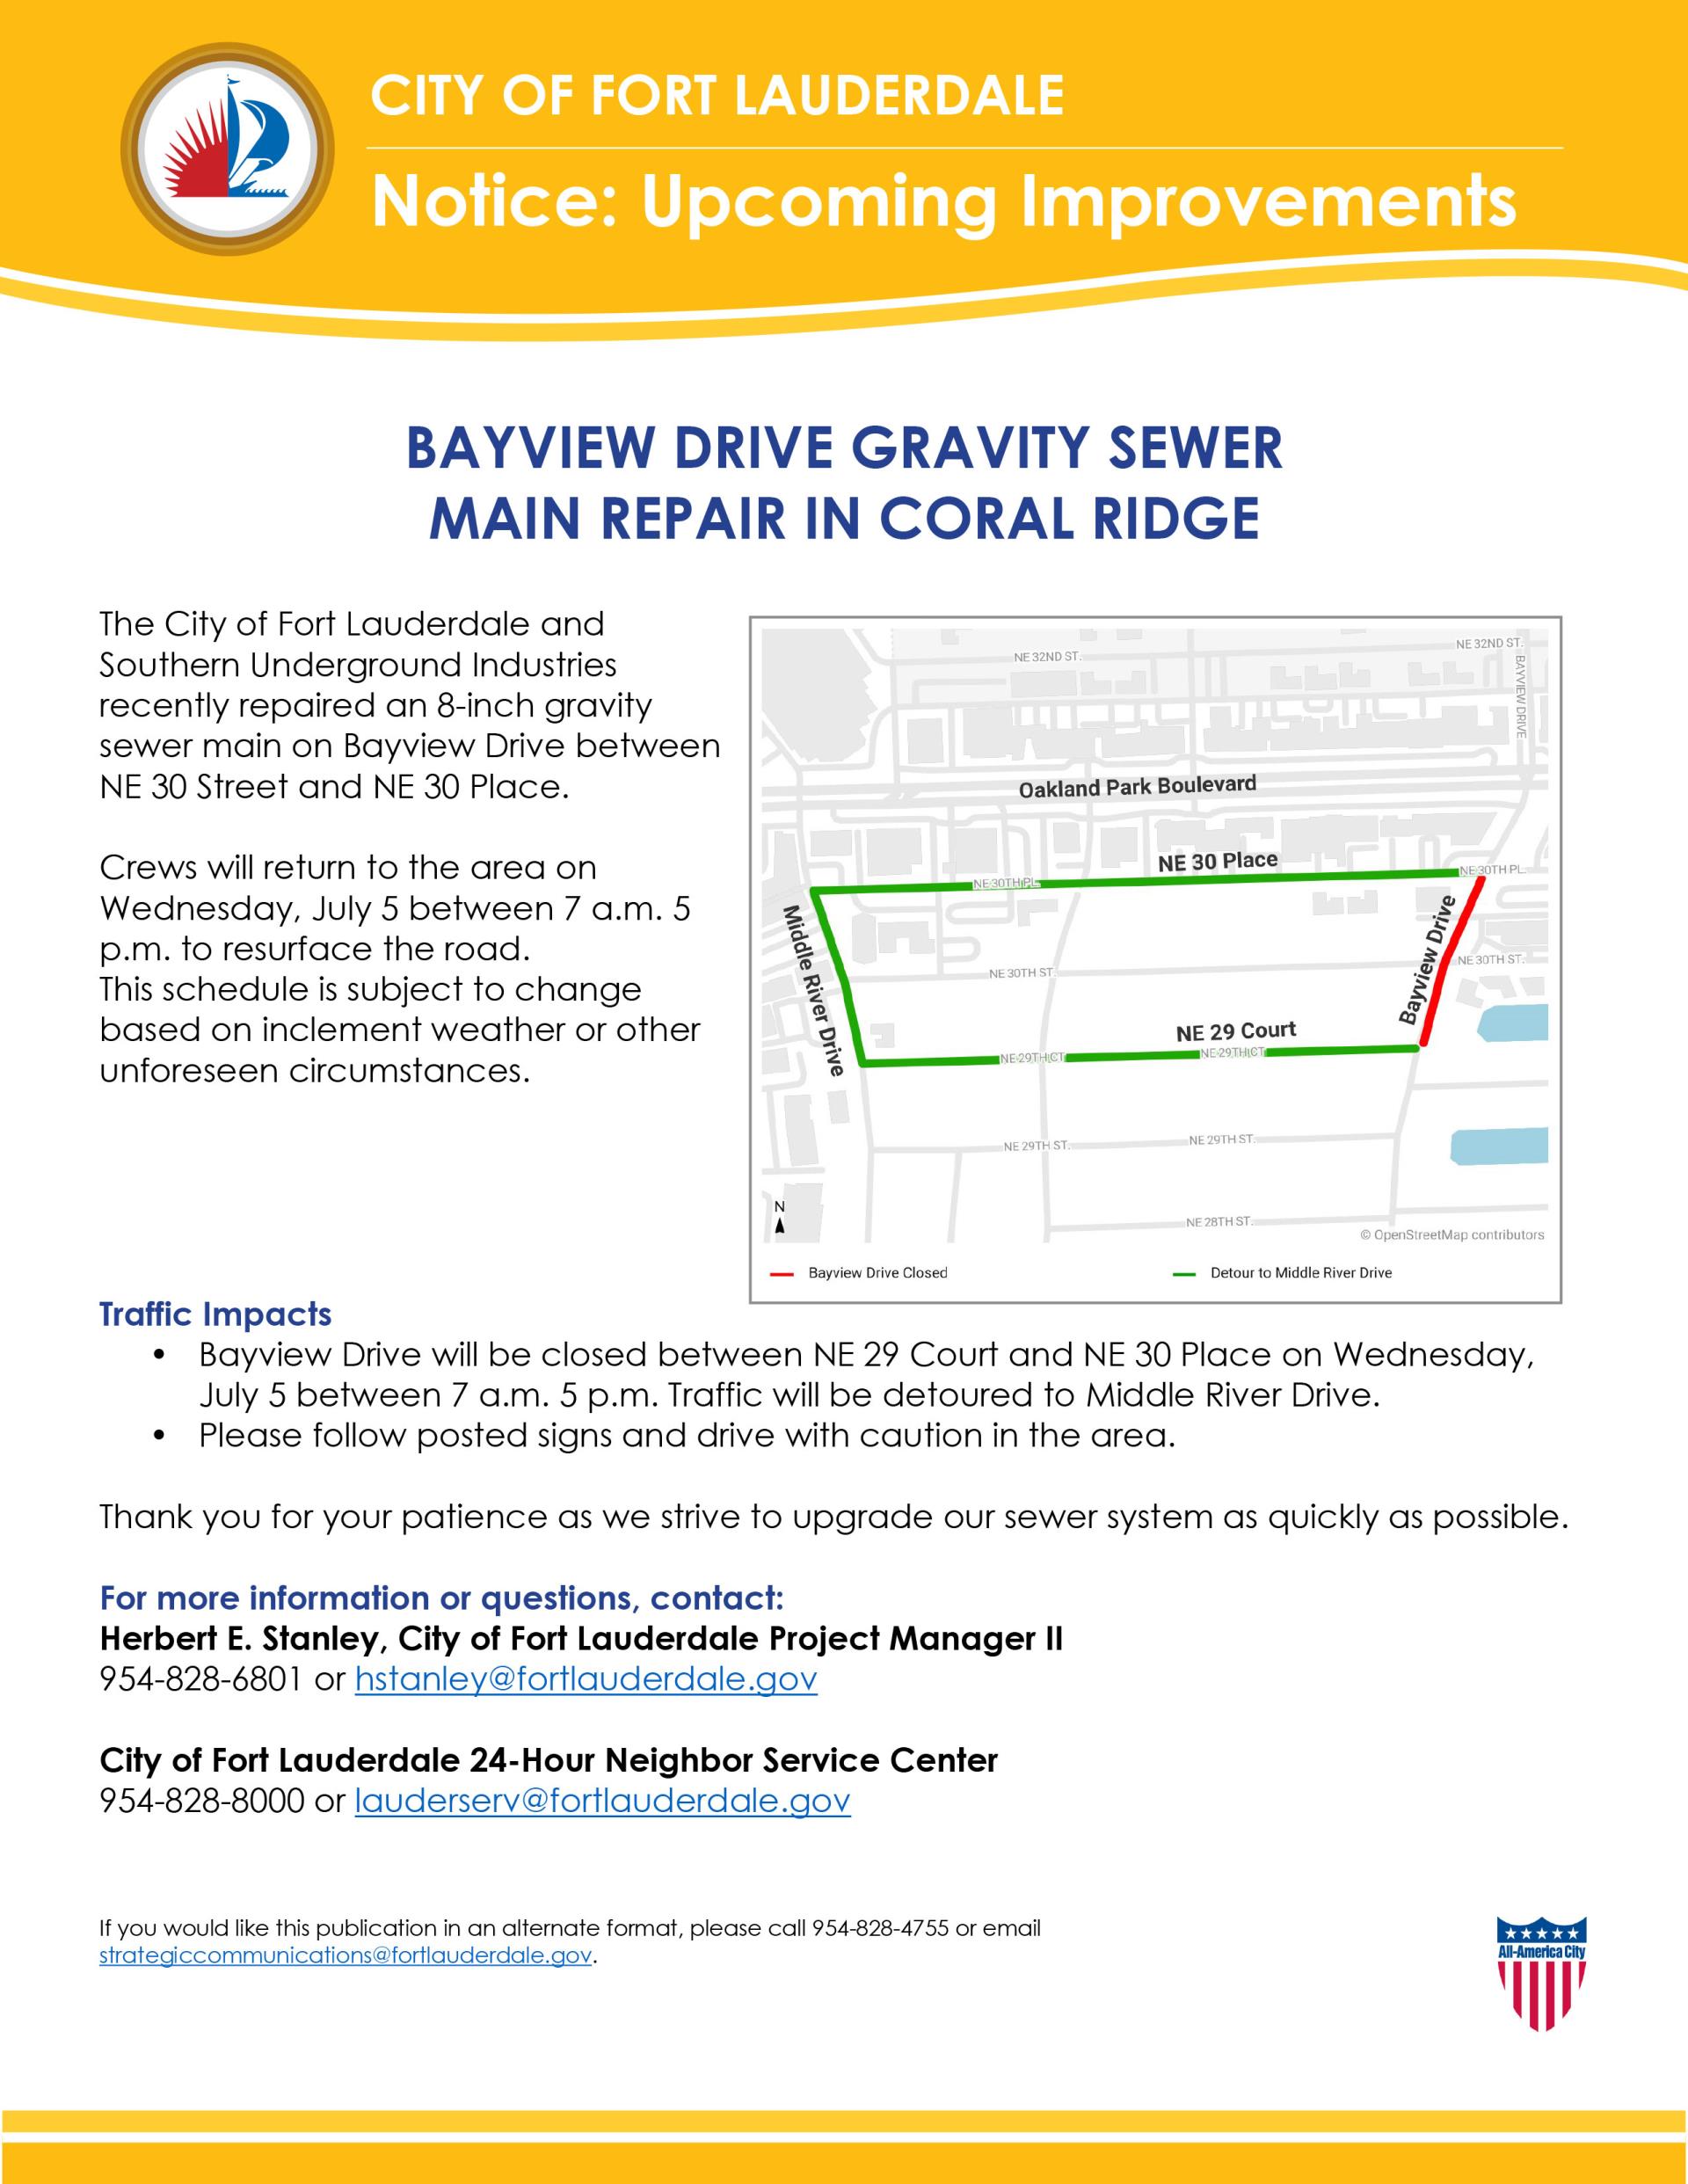 Bayview-Drive-Gravity-Sewer-Main-Repair-in-Coral-Ridge